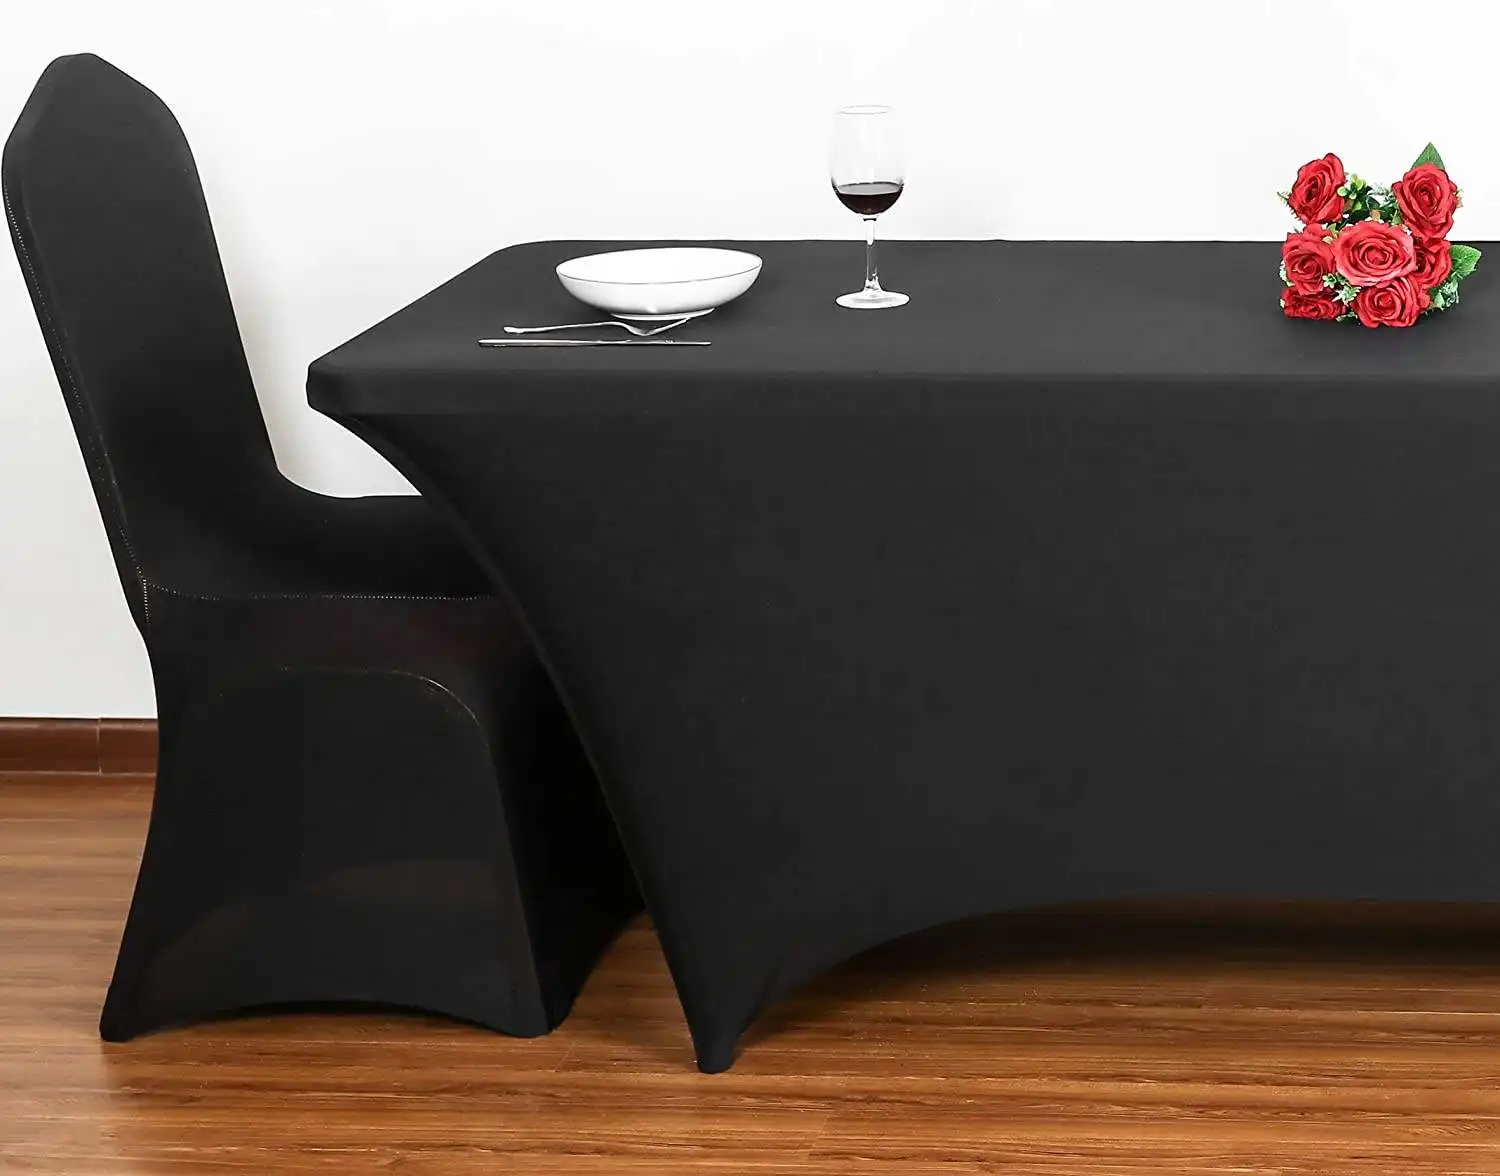 24 قطعة 4 أقدام مستطيلة قماش طاولة أبيض حفلات مأدبة زفاف مطاطي غطاء طاولة سبانديكس قماش طاولة للمناسبات